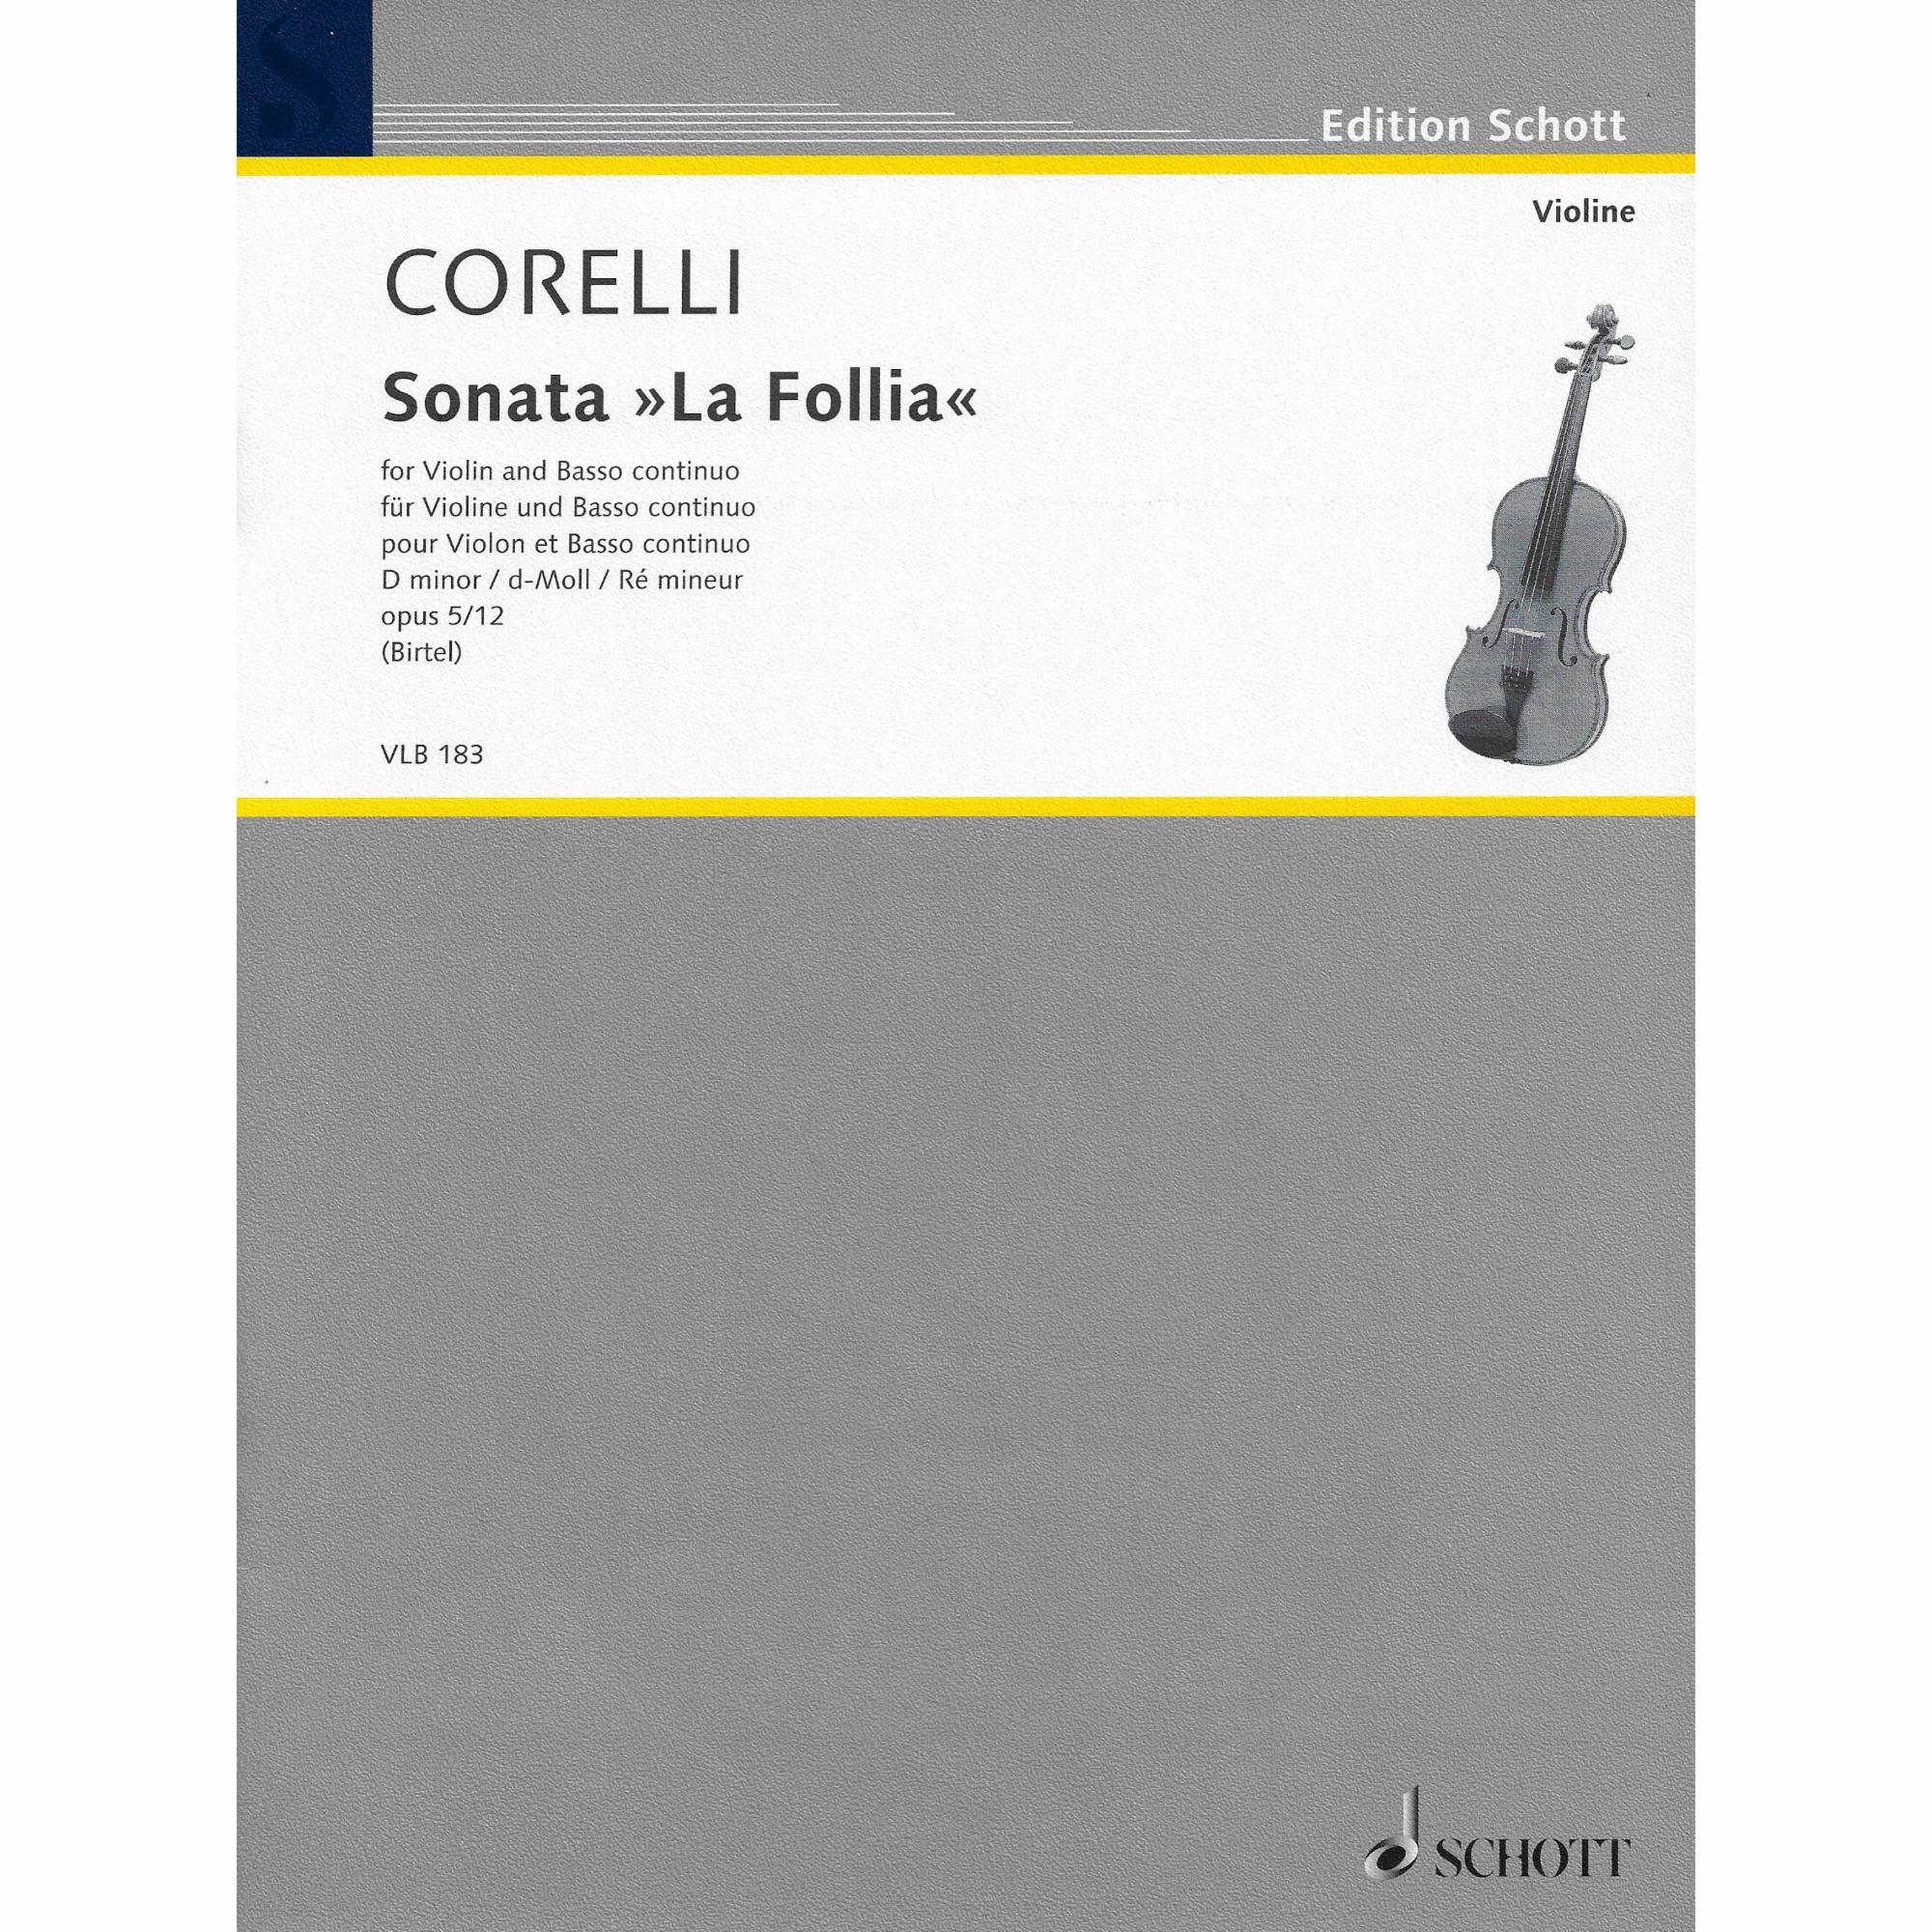 Corelli -- Sonata La Follia, Op. 5/12 for Violin and Basso Continuo